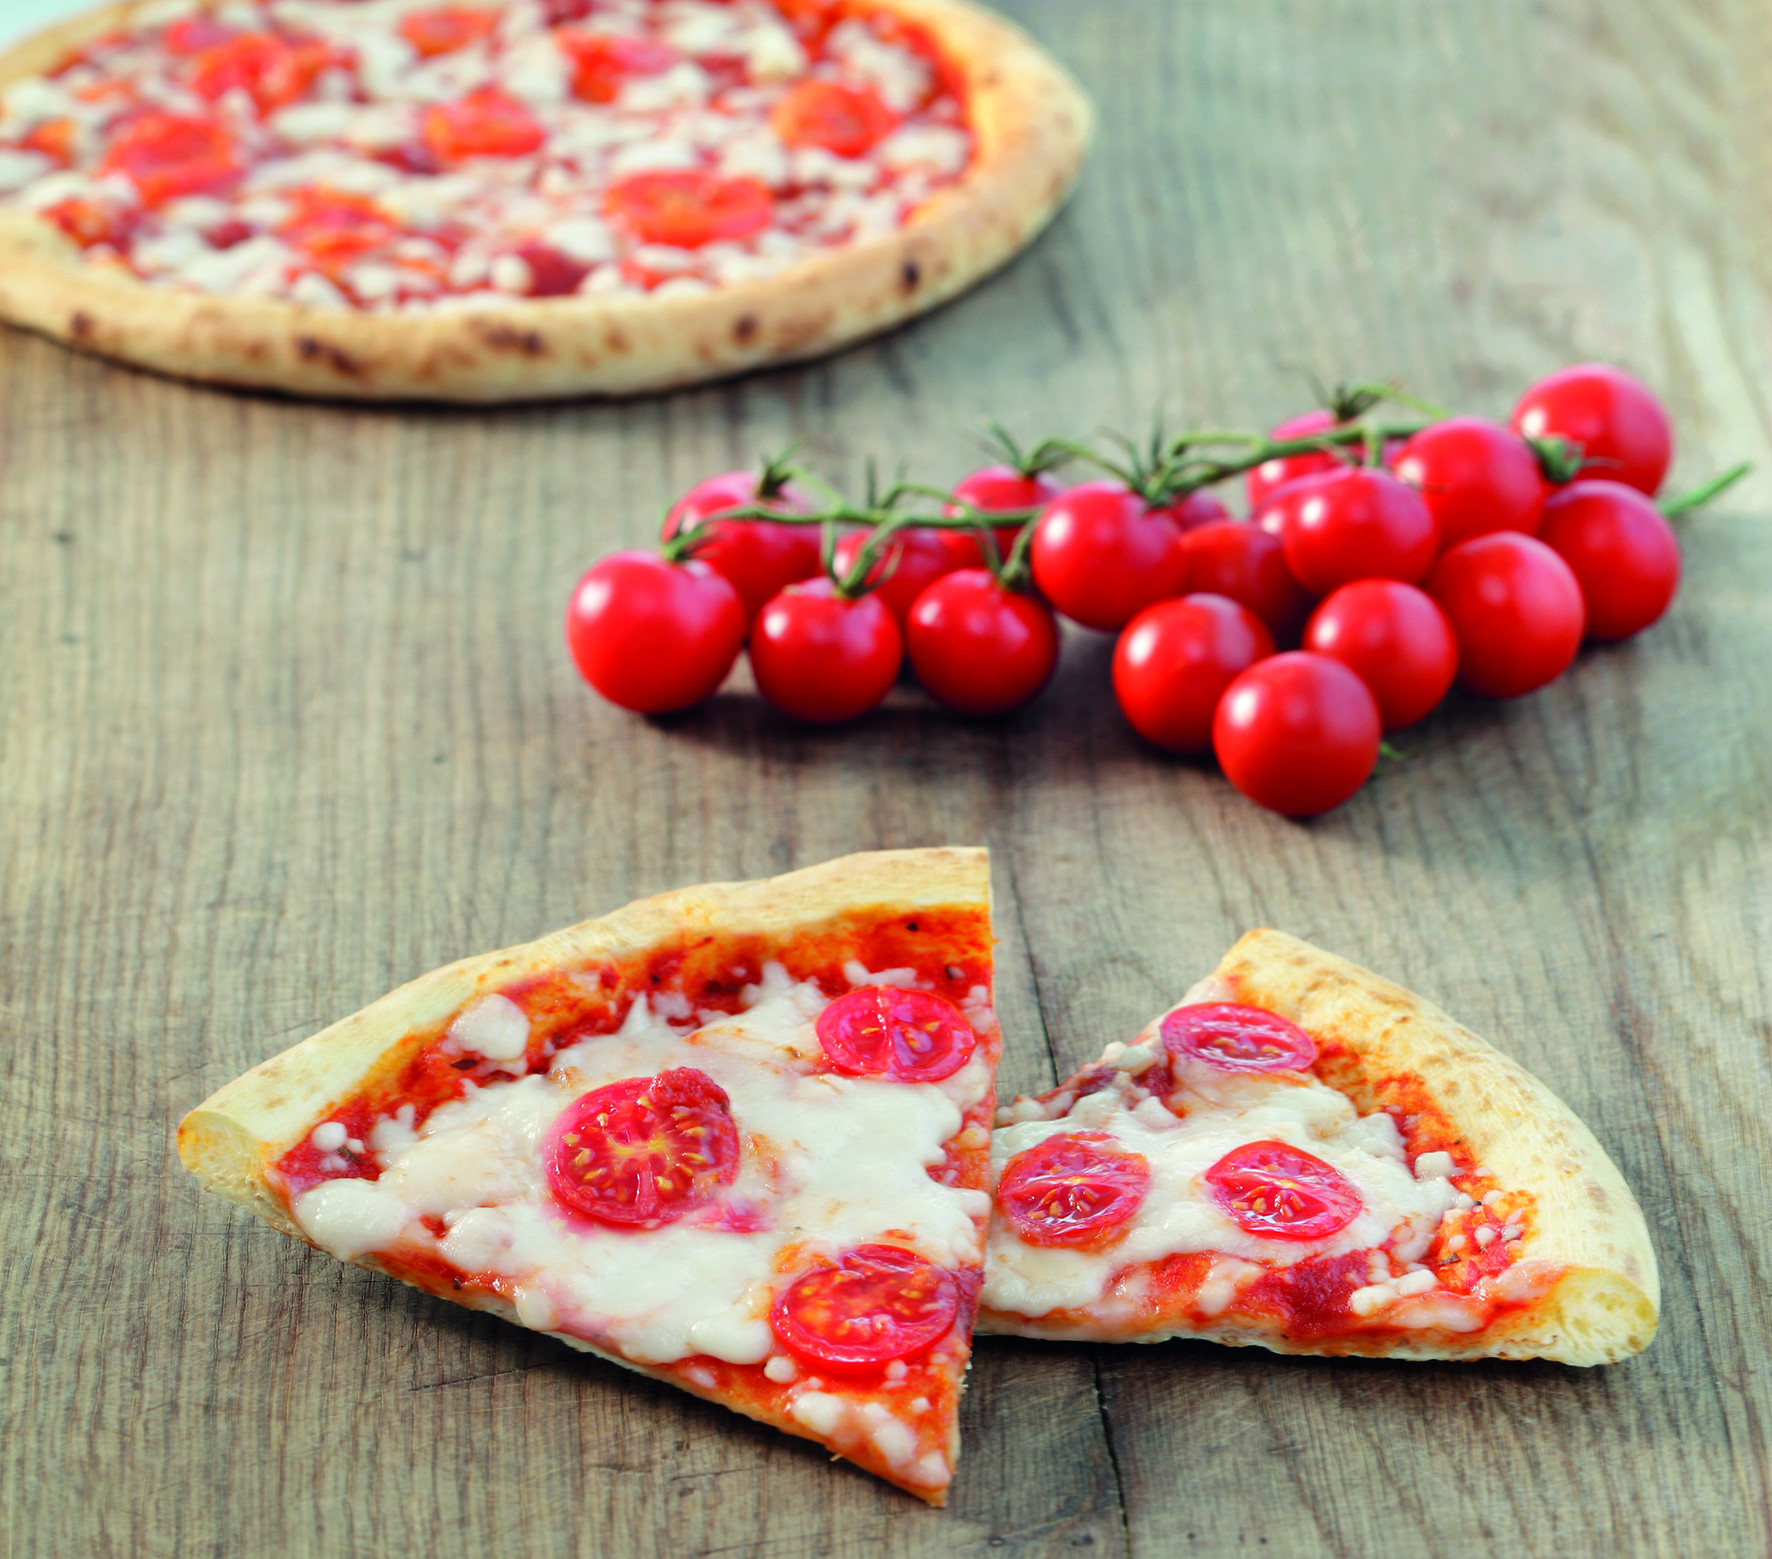  La pizza margherita vegana nel banco freezer del supermercato: la firma Roncadin